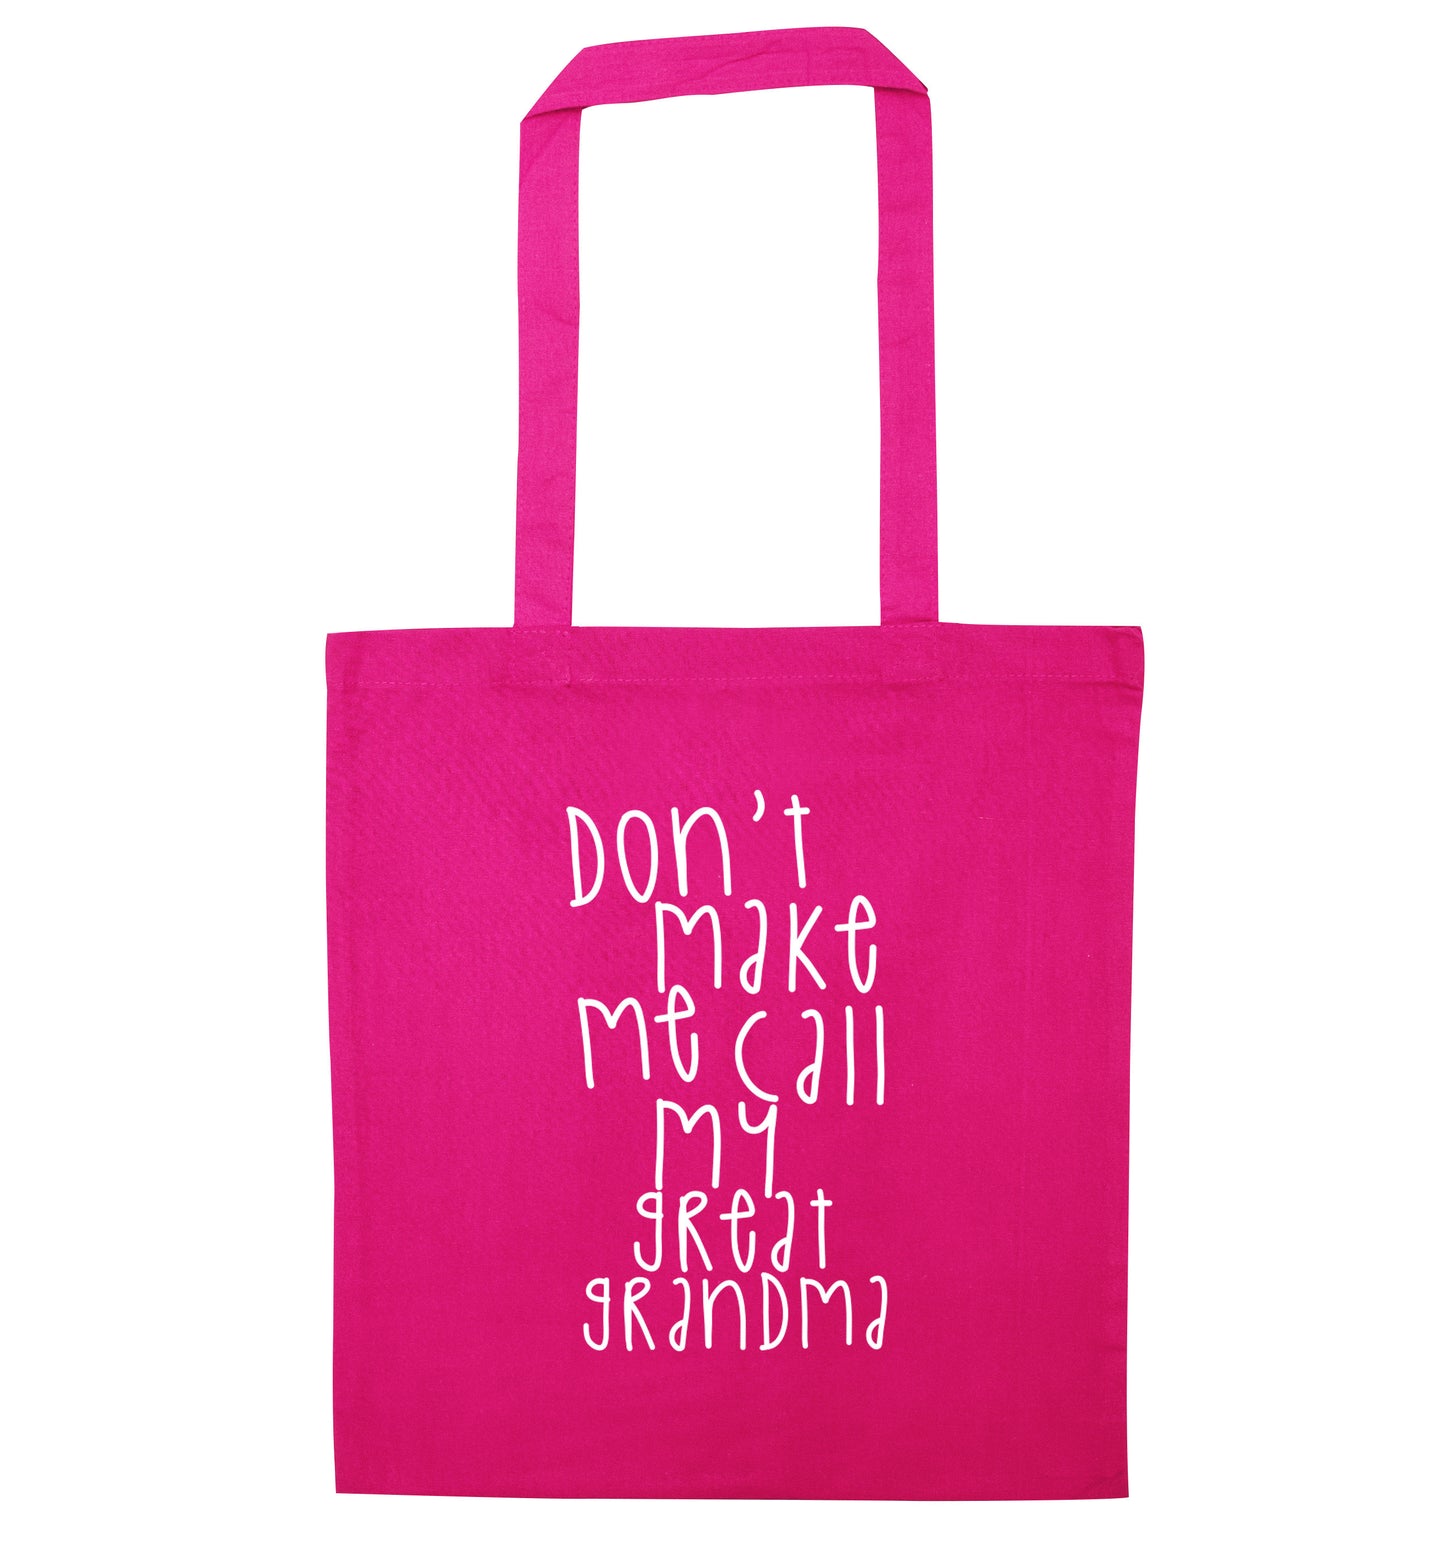 Don't make me call my great grandma pink tote bag